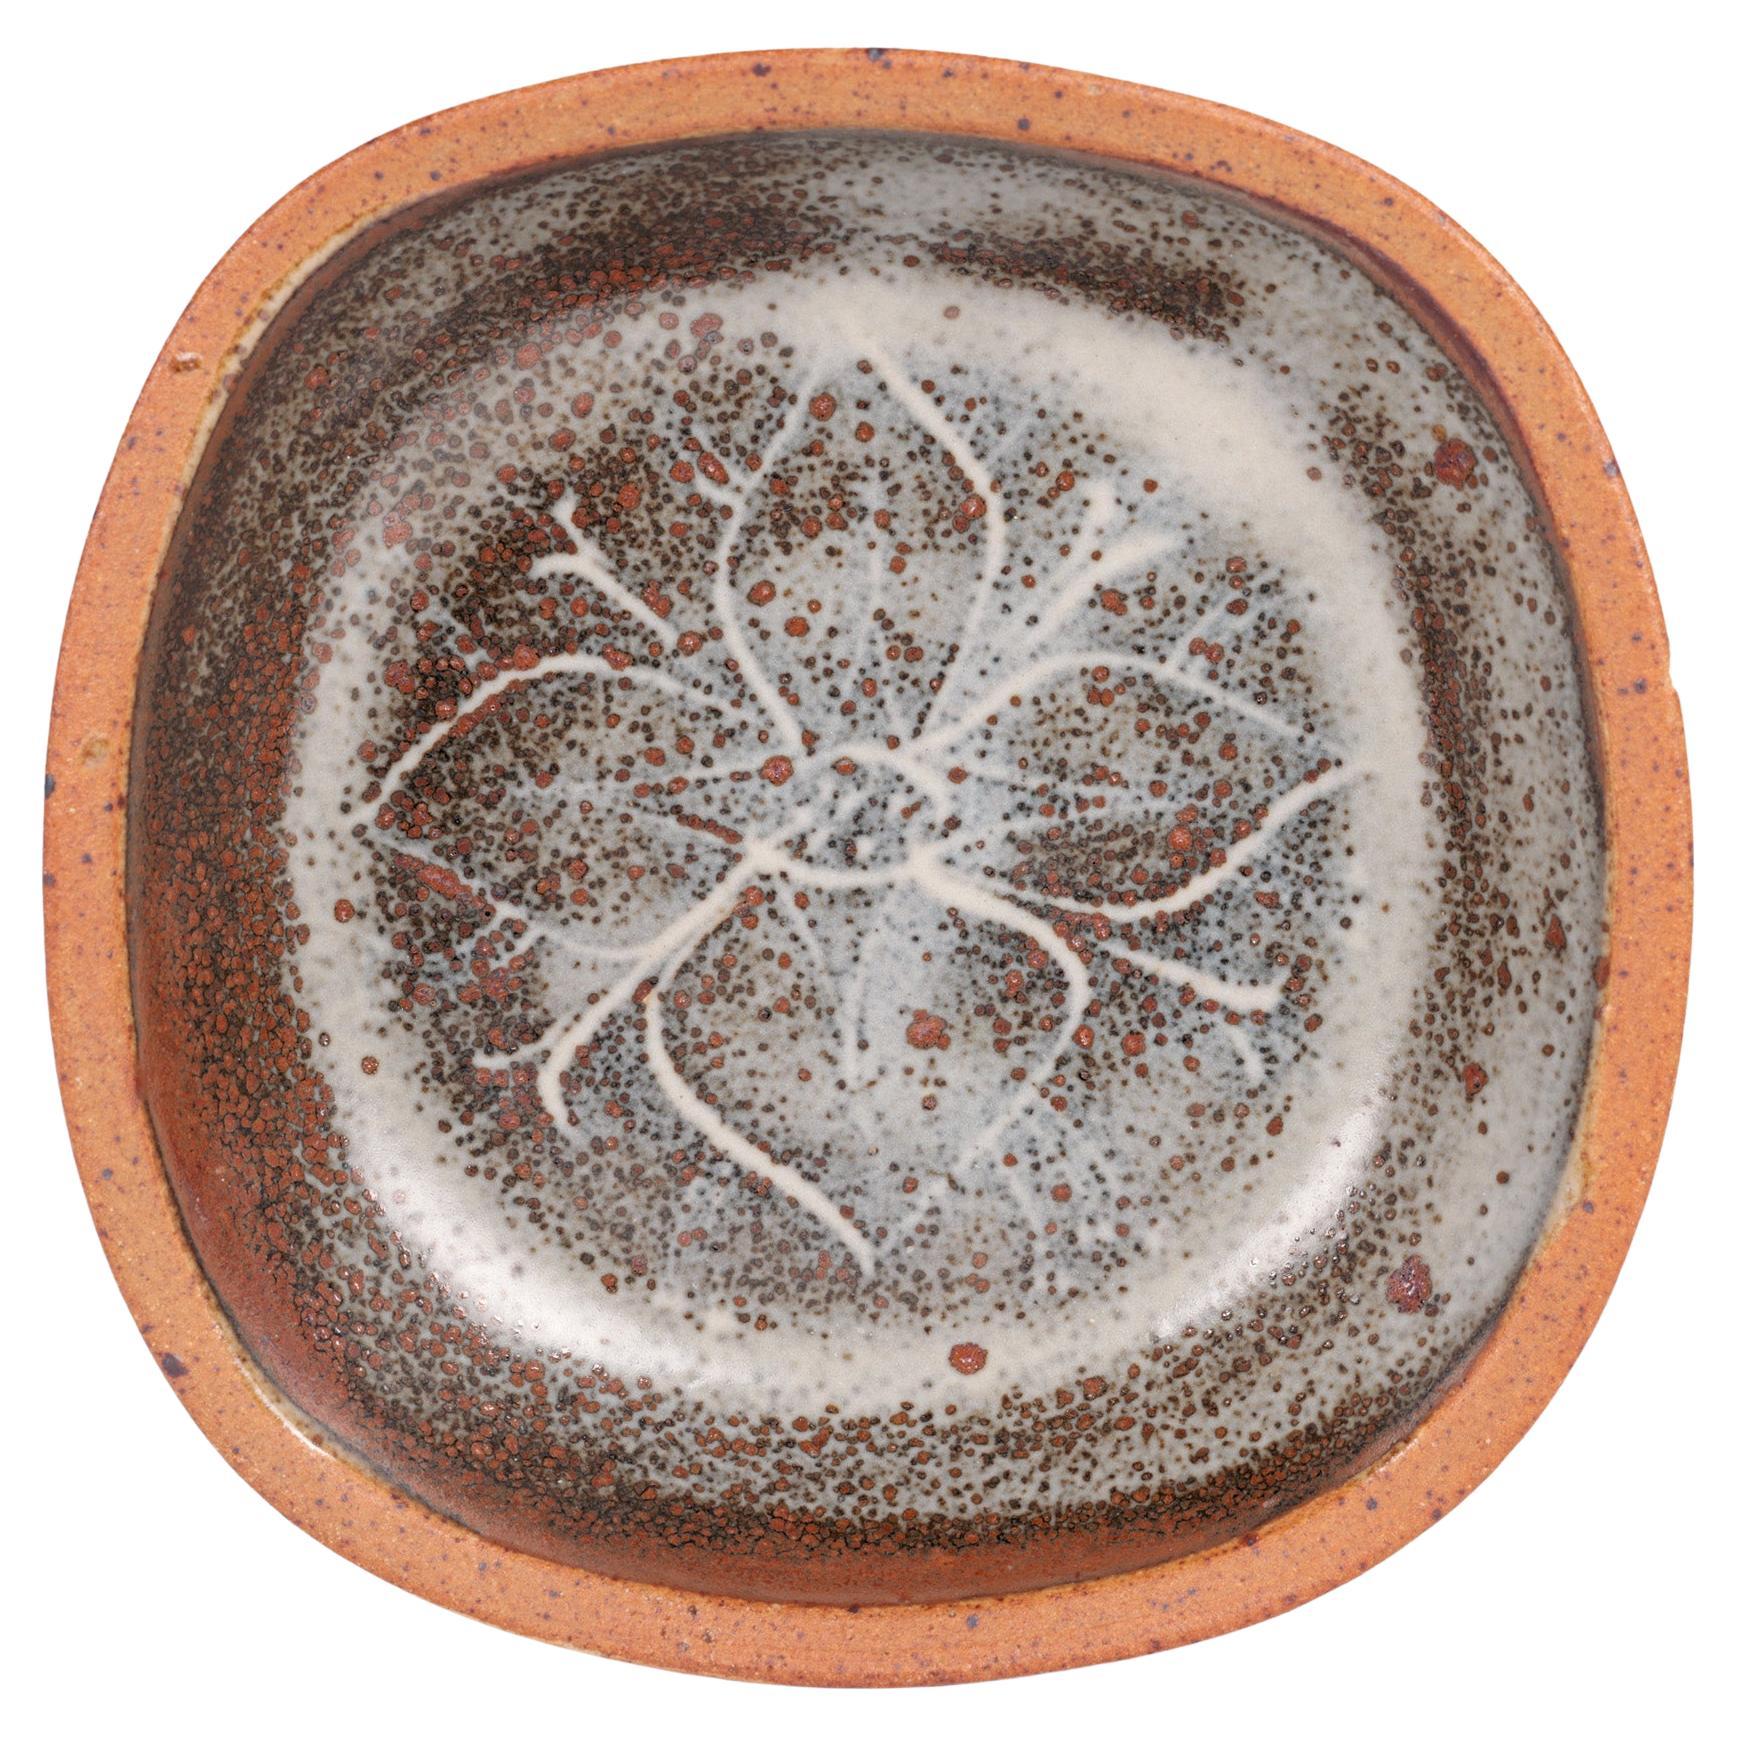 David Leach Pottery Studio Pottery Floral Decorated Dish (Plat à décor floral) 